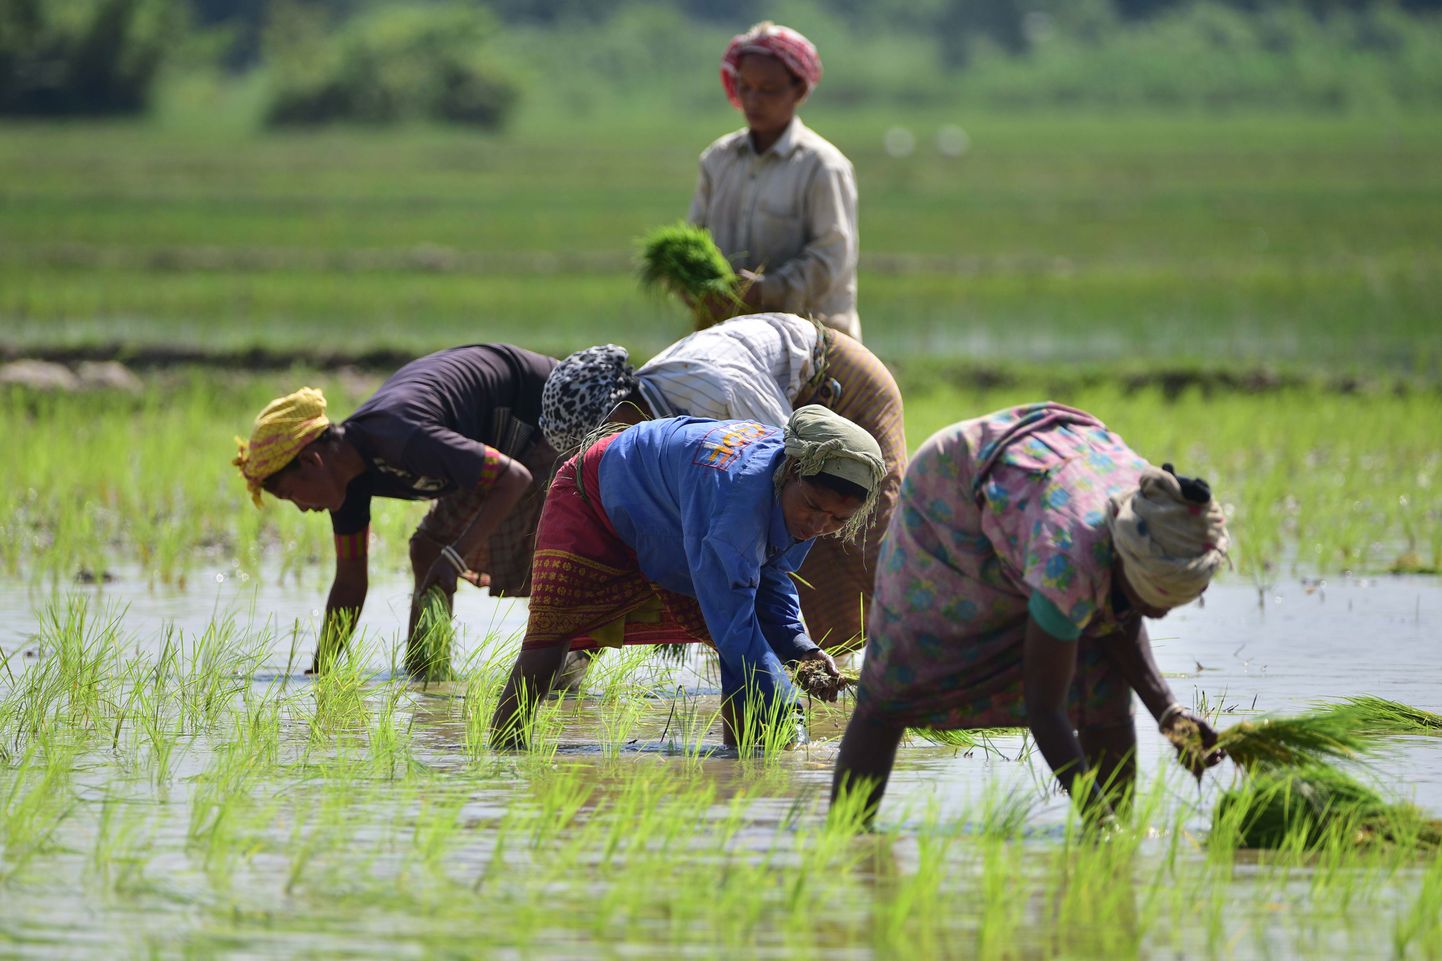 Naised istutamas riisitaimi riisipõllul Indias.